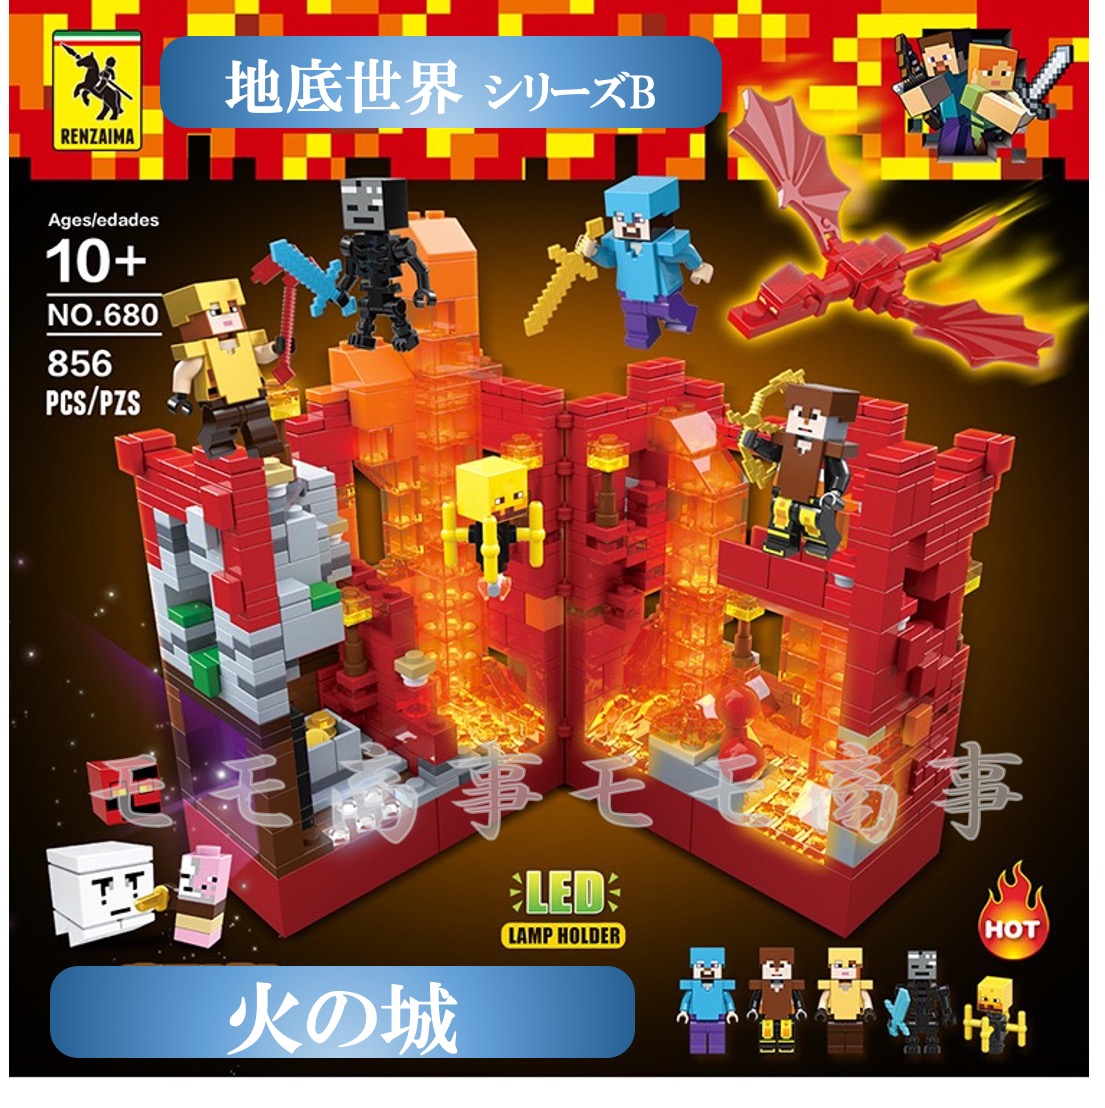 地底世界 火の城 ミニフィグ マイクラ風 マインクラフト風 レゴ 超美品の 互換 LEGO 送料無料 おもちゃ 子ども ブロック キッズ ミニフィギュア 火の城856PCSとミニフィグセット ミニフィギュ 価格